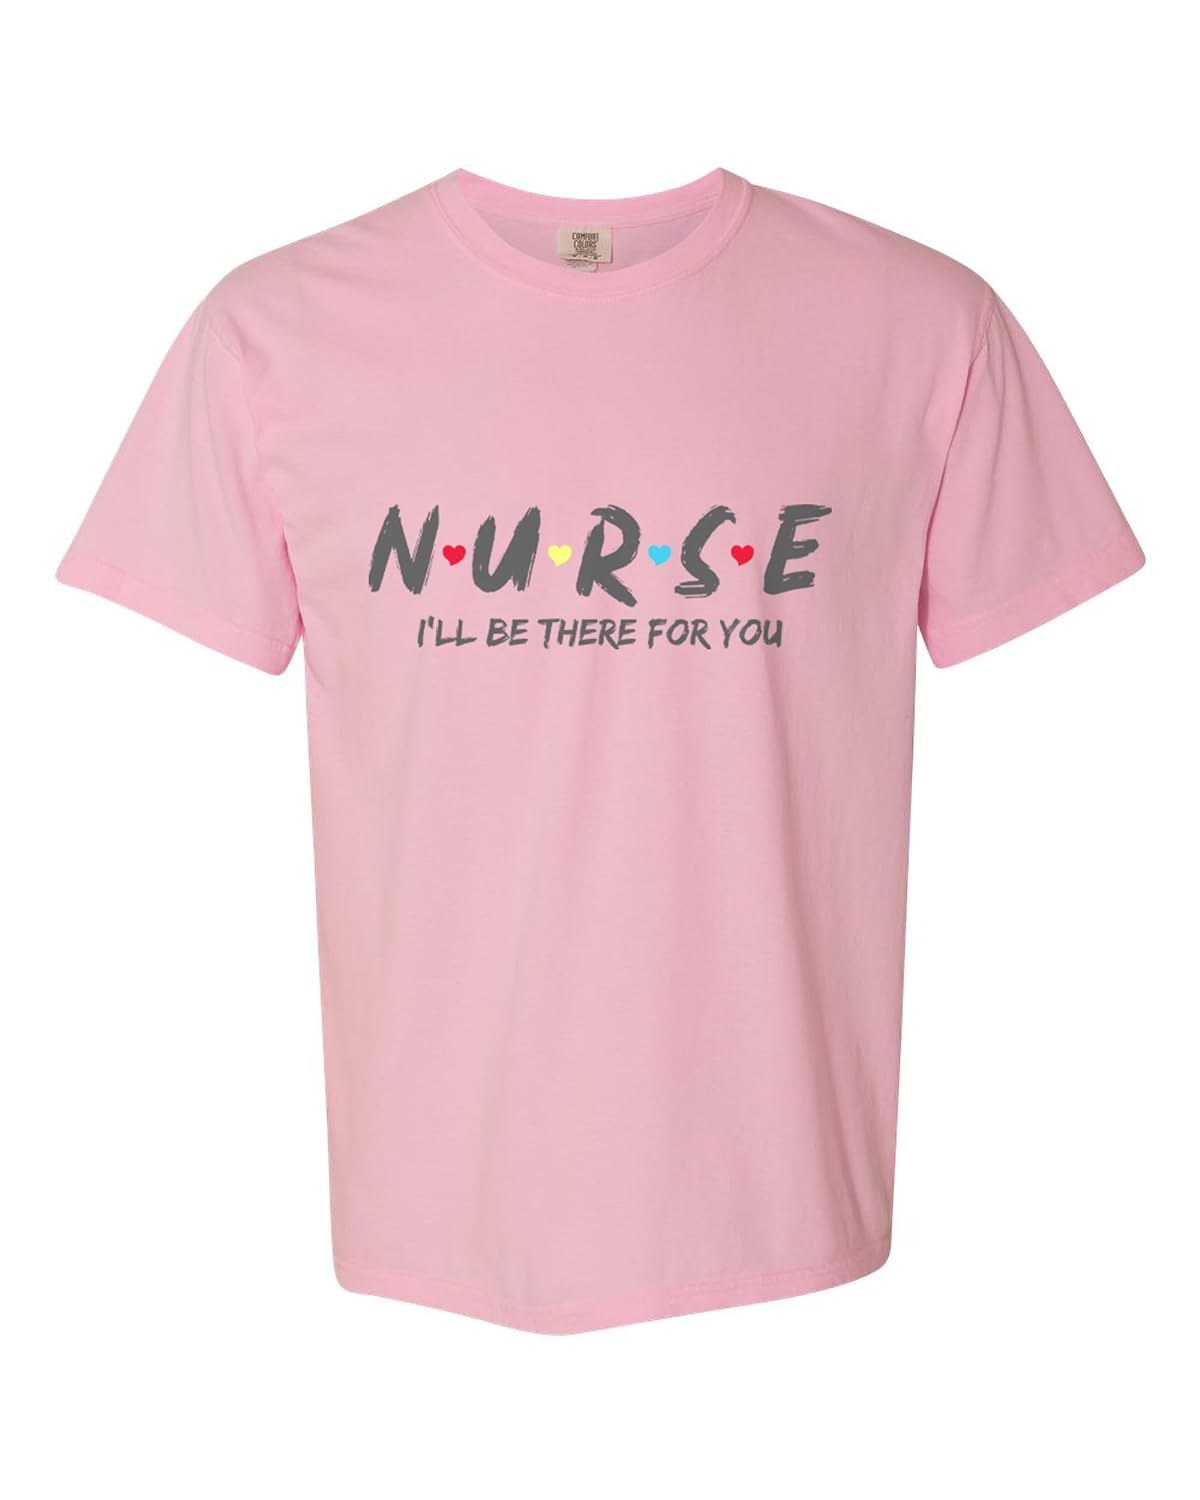 Nurse T Shirt pink color